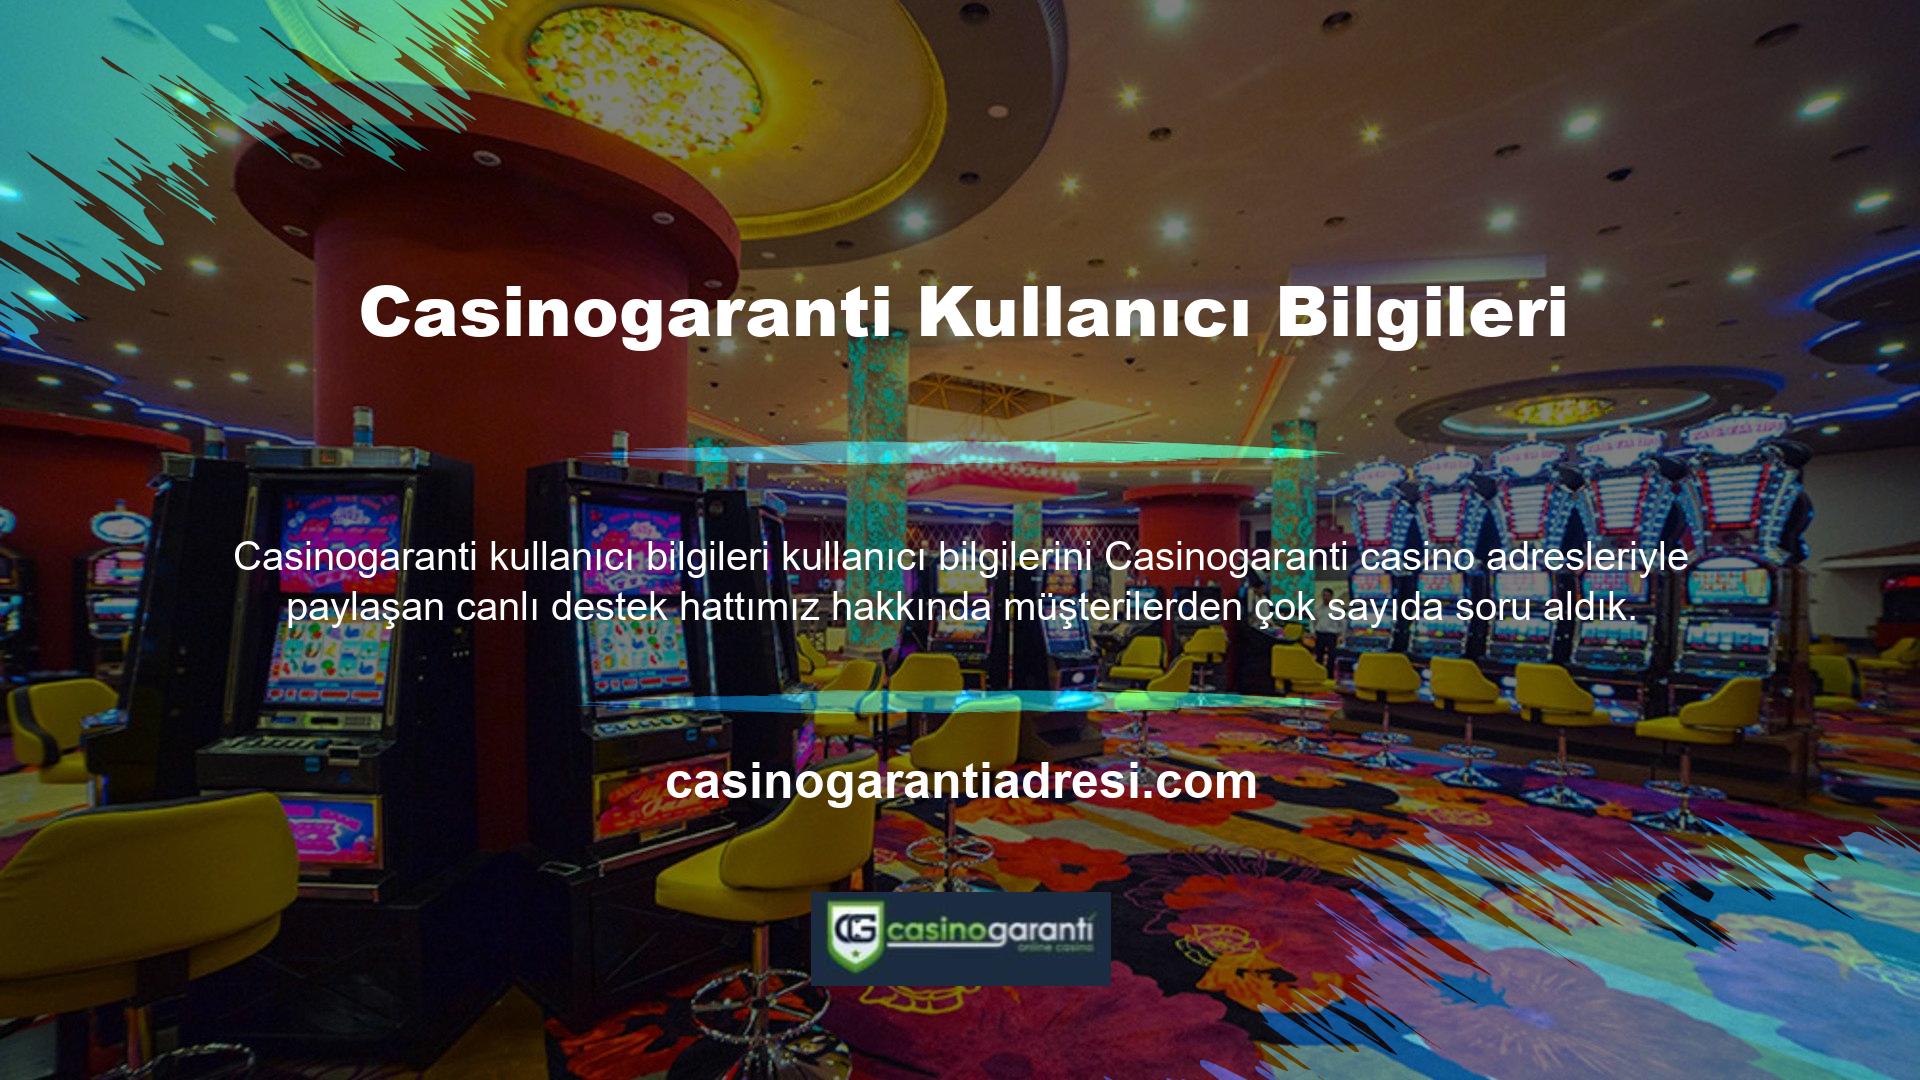 Bu soruları görünce Casinogaranti Casino web sitesinin kullanıcı bilgilerini koruyup korumadığını merak ettim